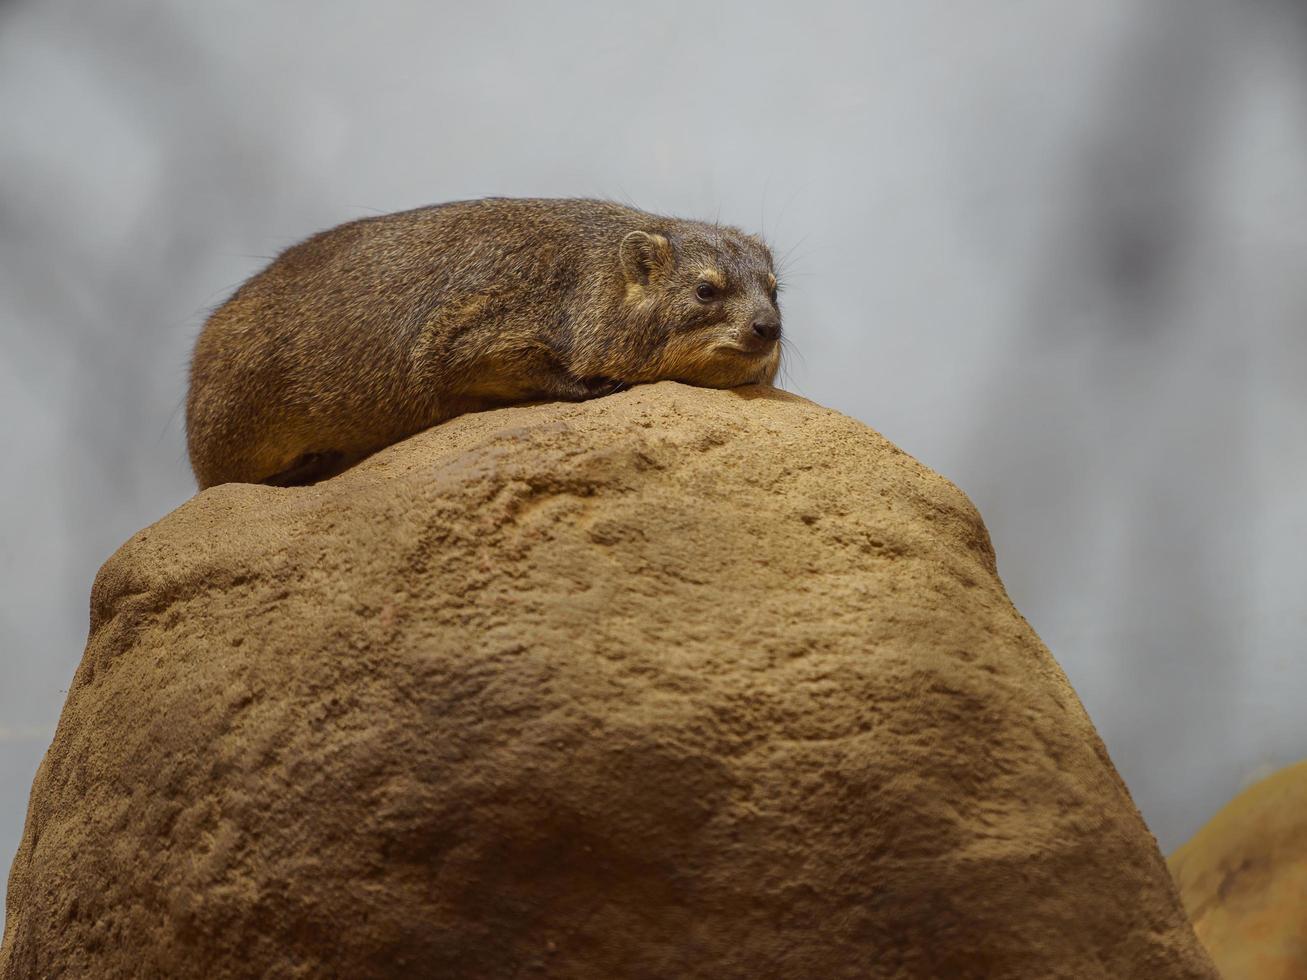 Rock hyrax sur rocher photo